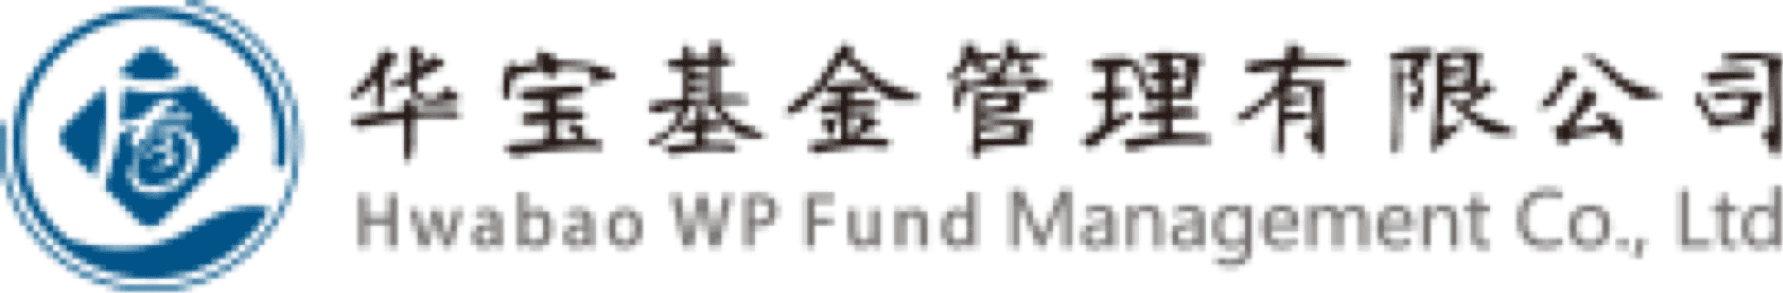 华宝基金·Hwabao WP Fund Management